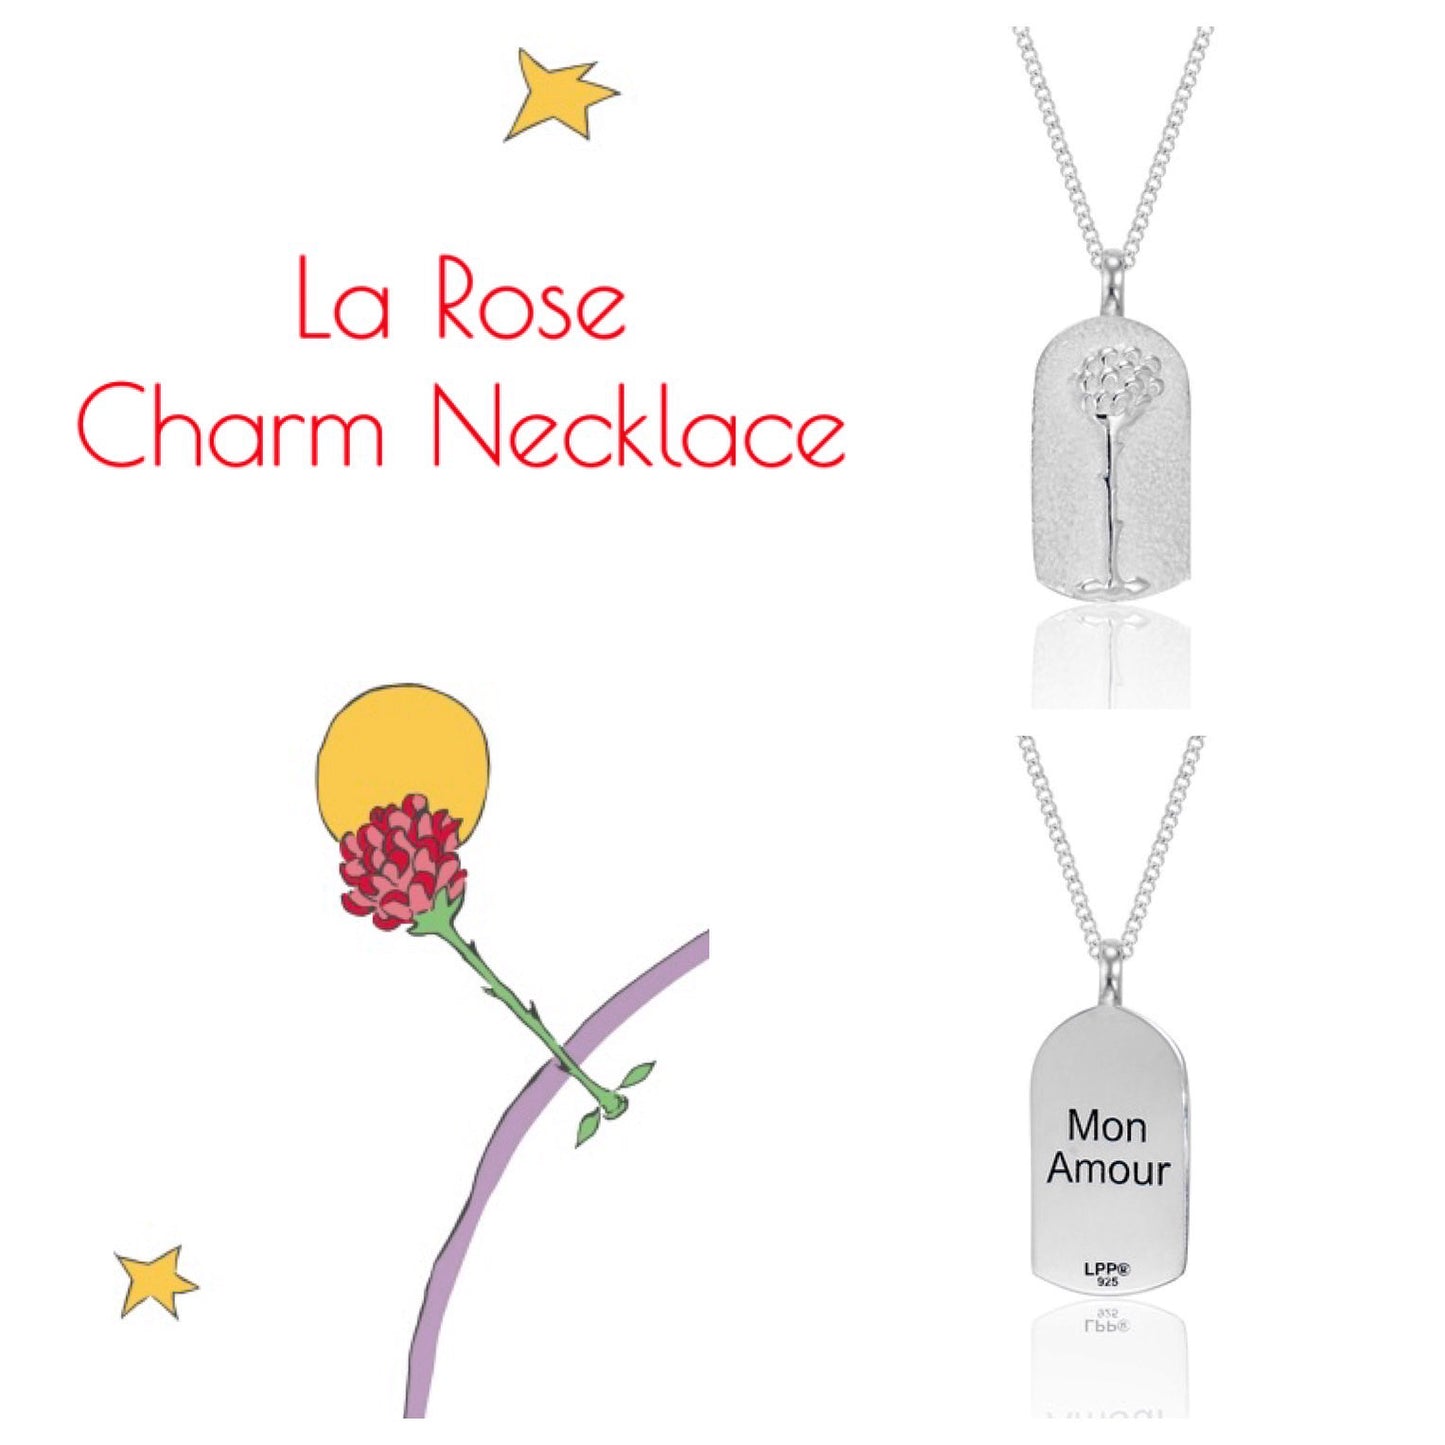 La Rose Charm Necklace